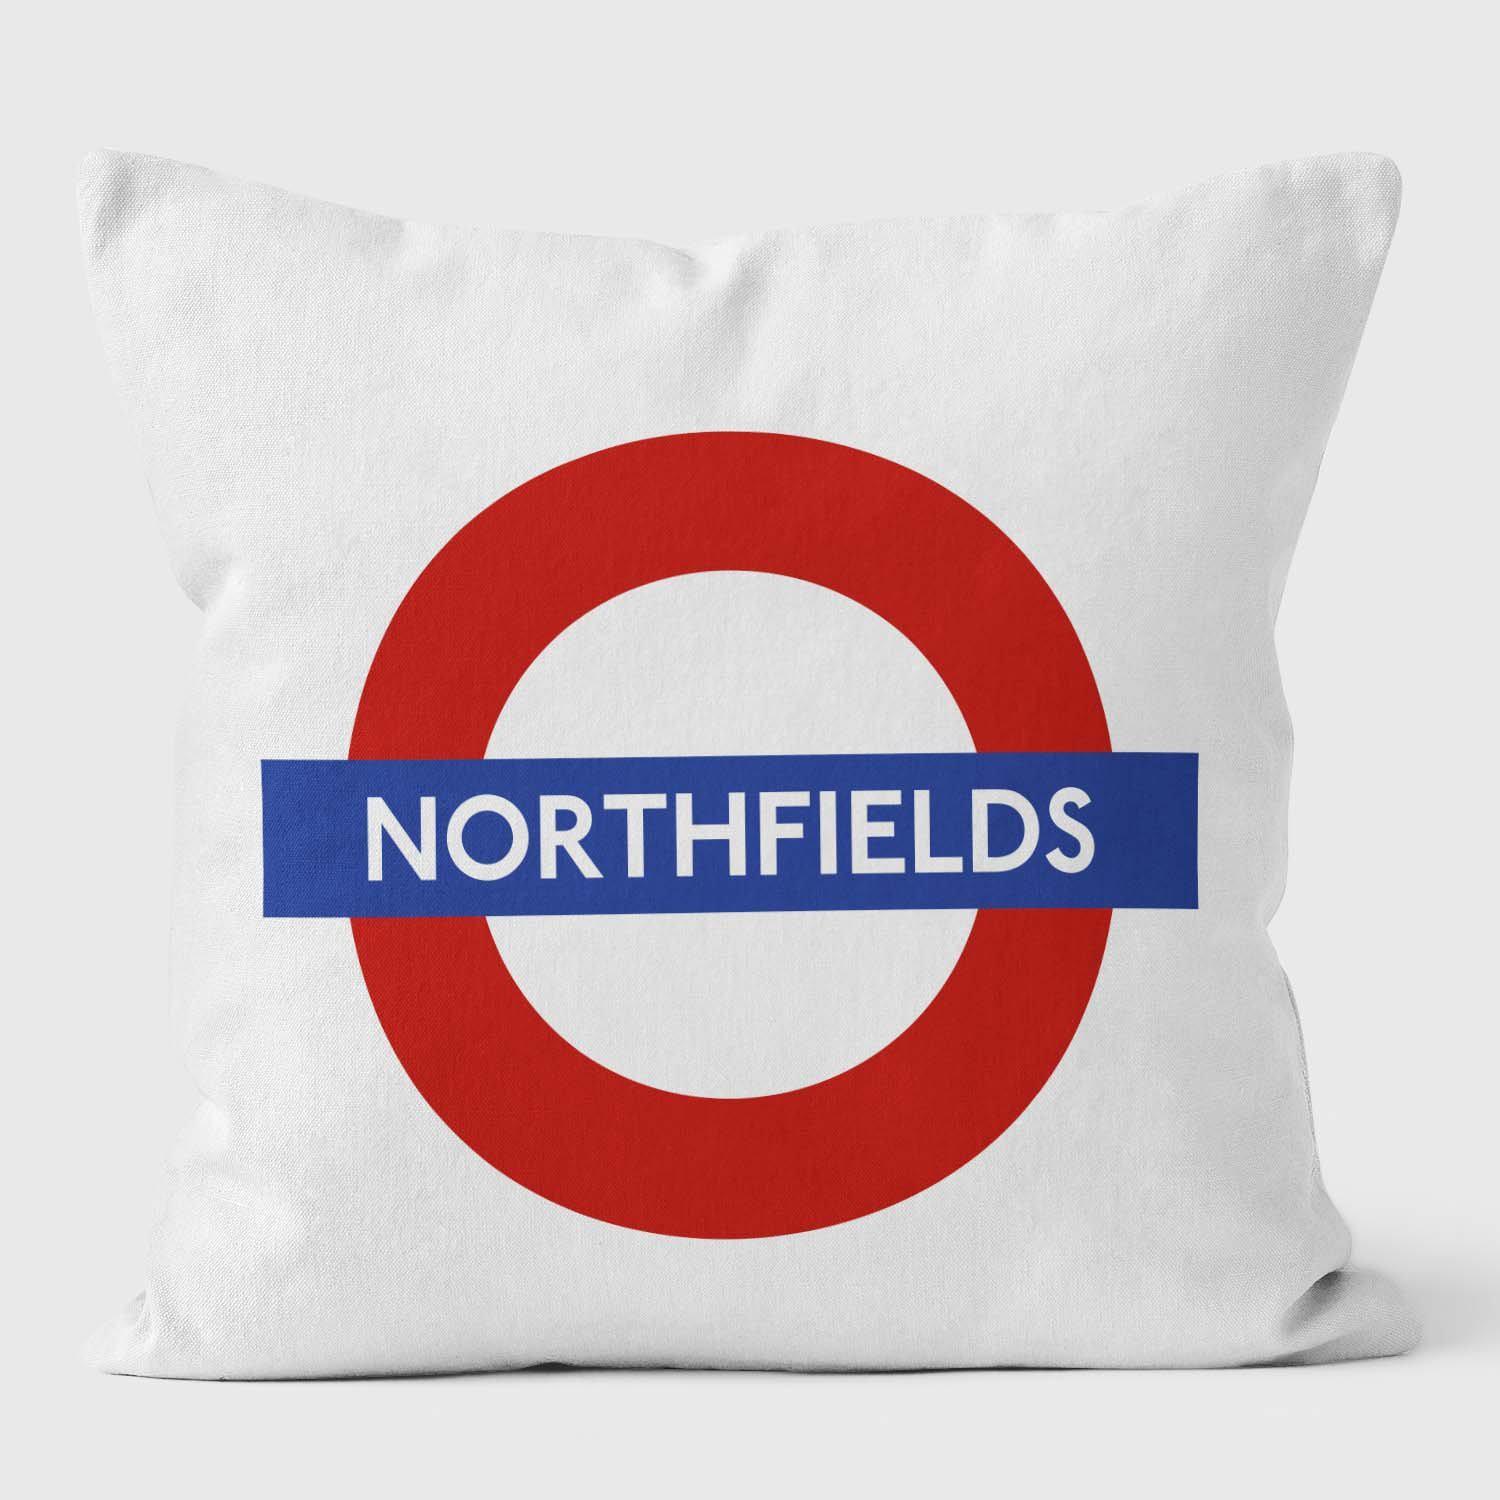 Northfields London Underground Tube Station Roundel Cushion - Handmade Cushions UK - WeLoveCushions